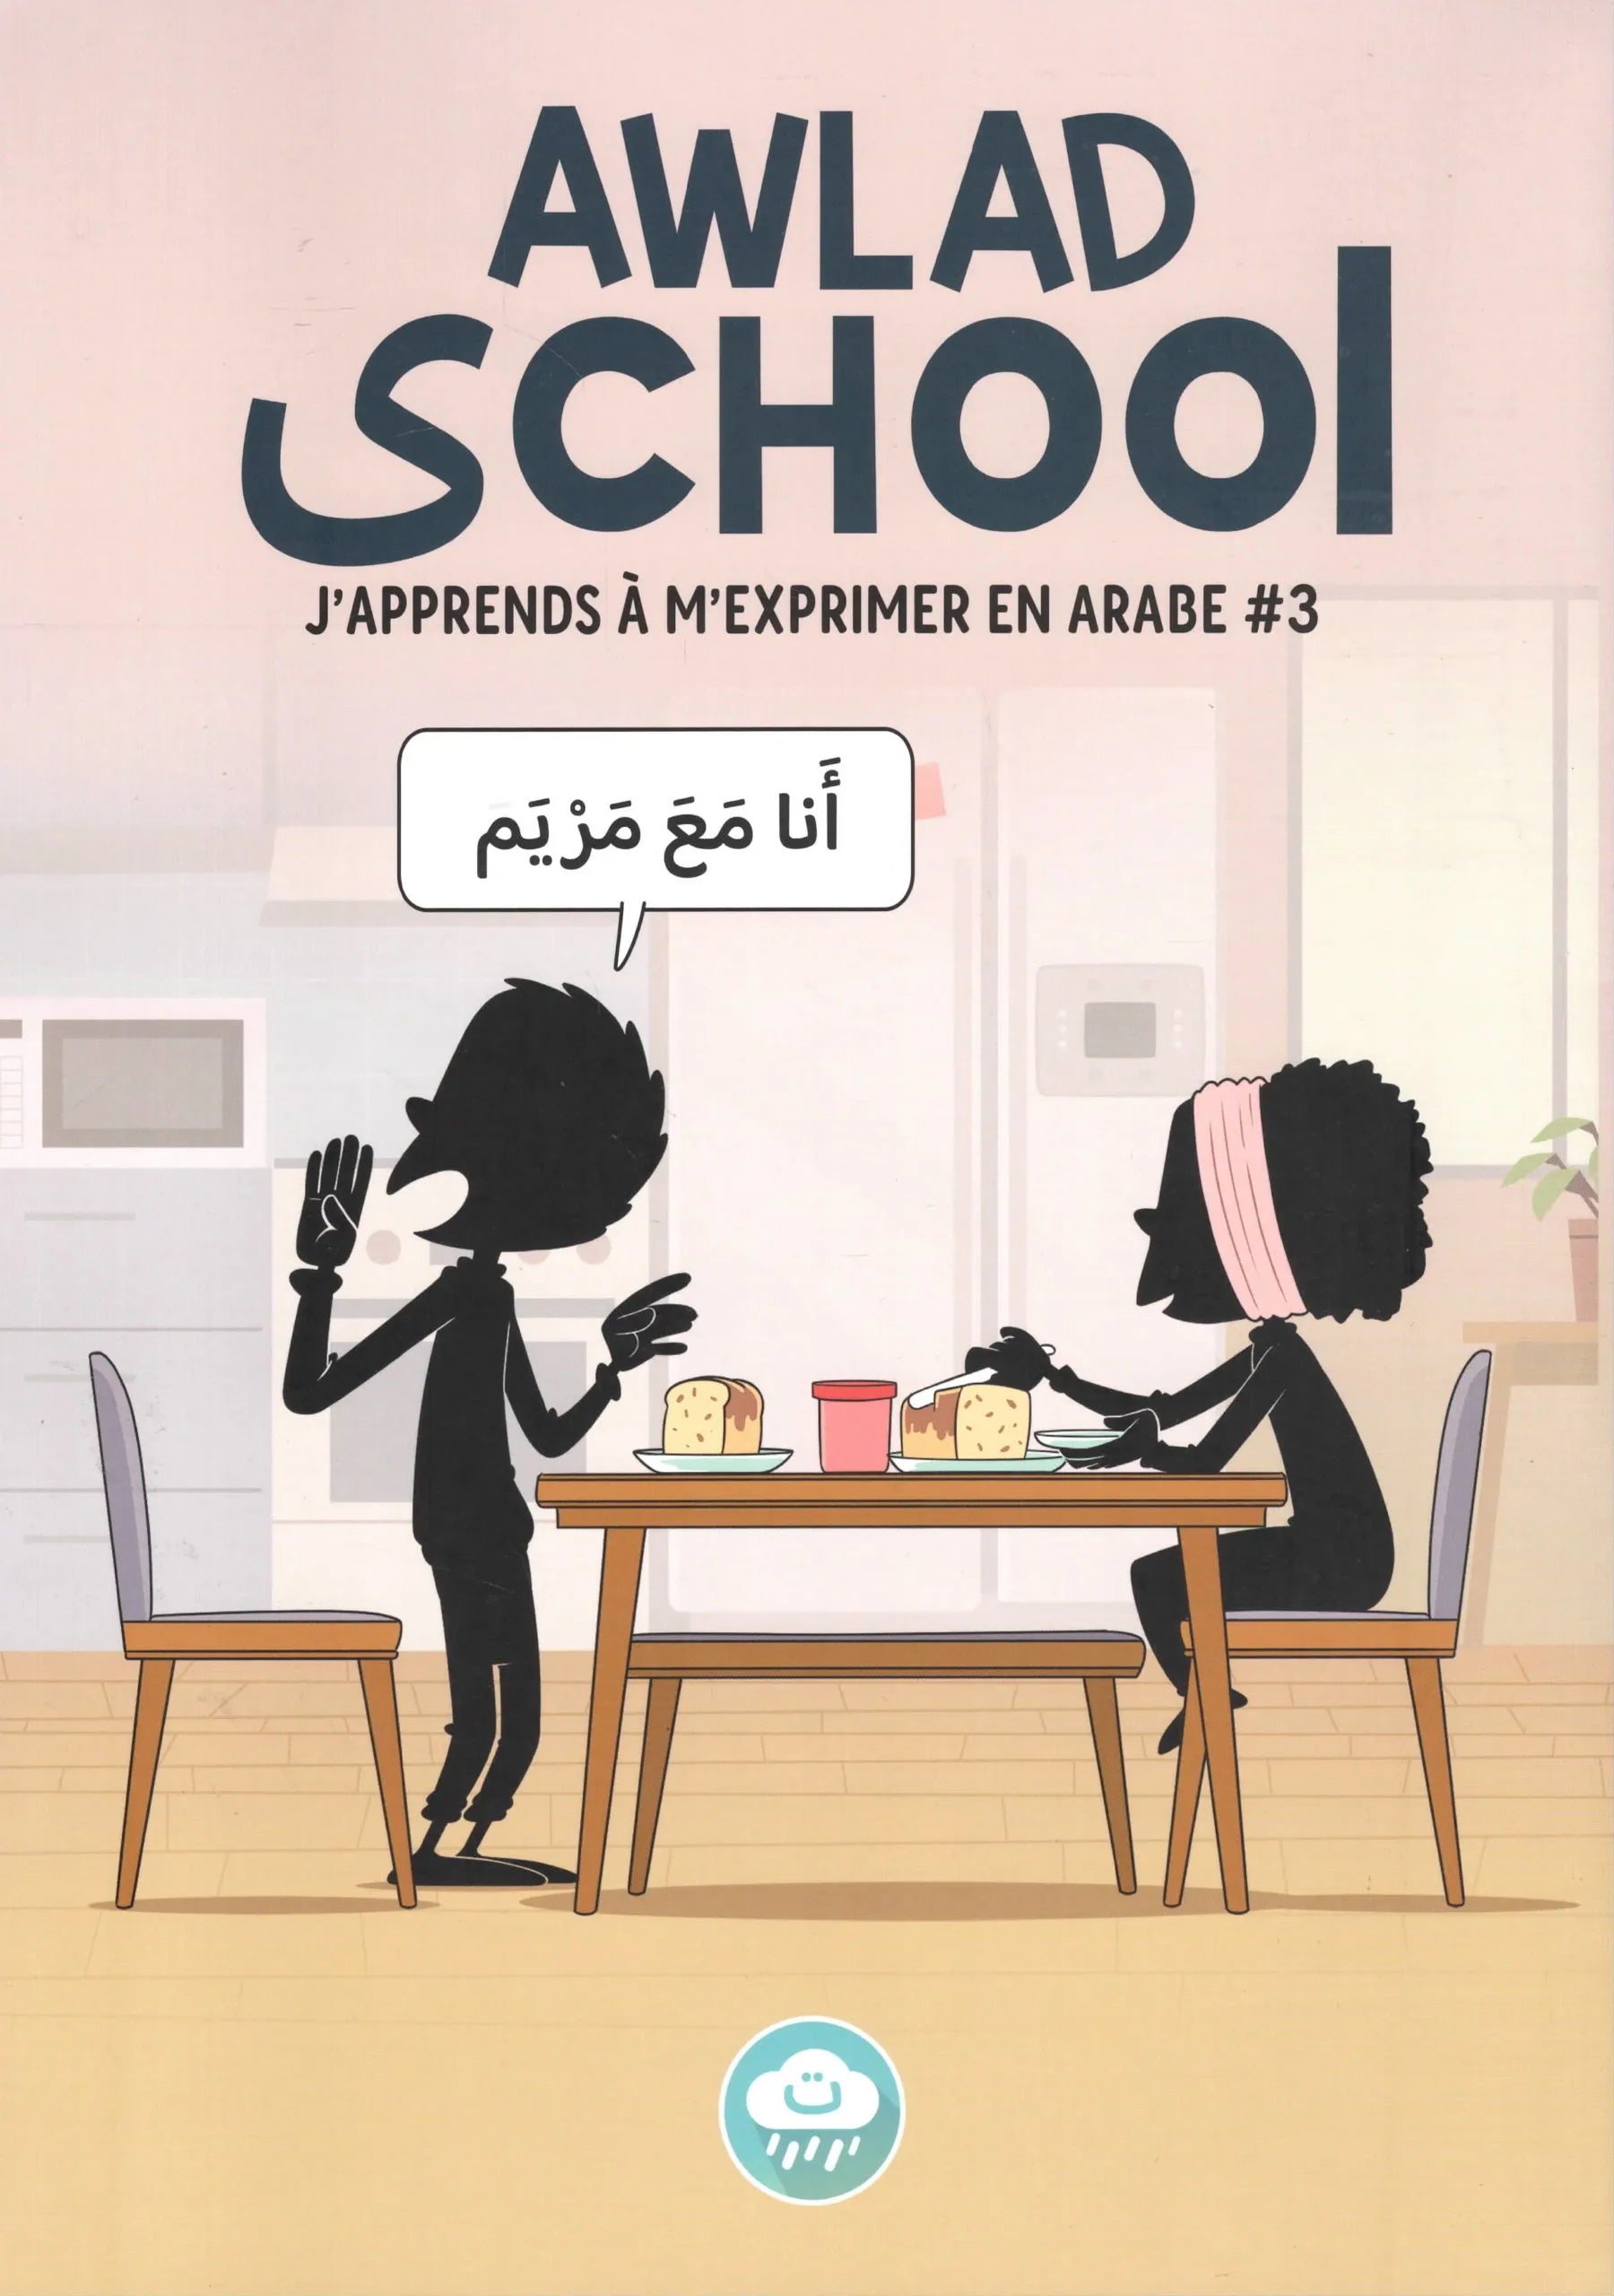 Awlad School – J’apprends à m’exprimer en arabe #3 - BDouin